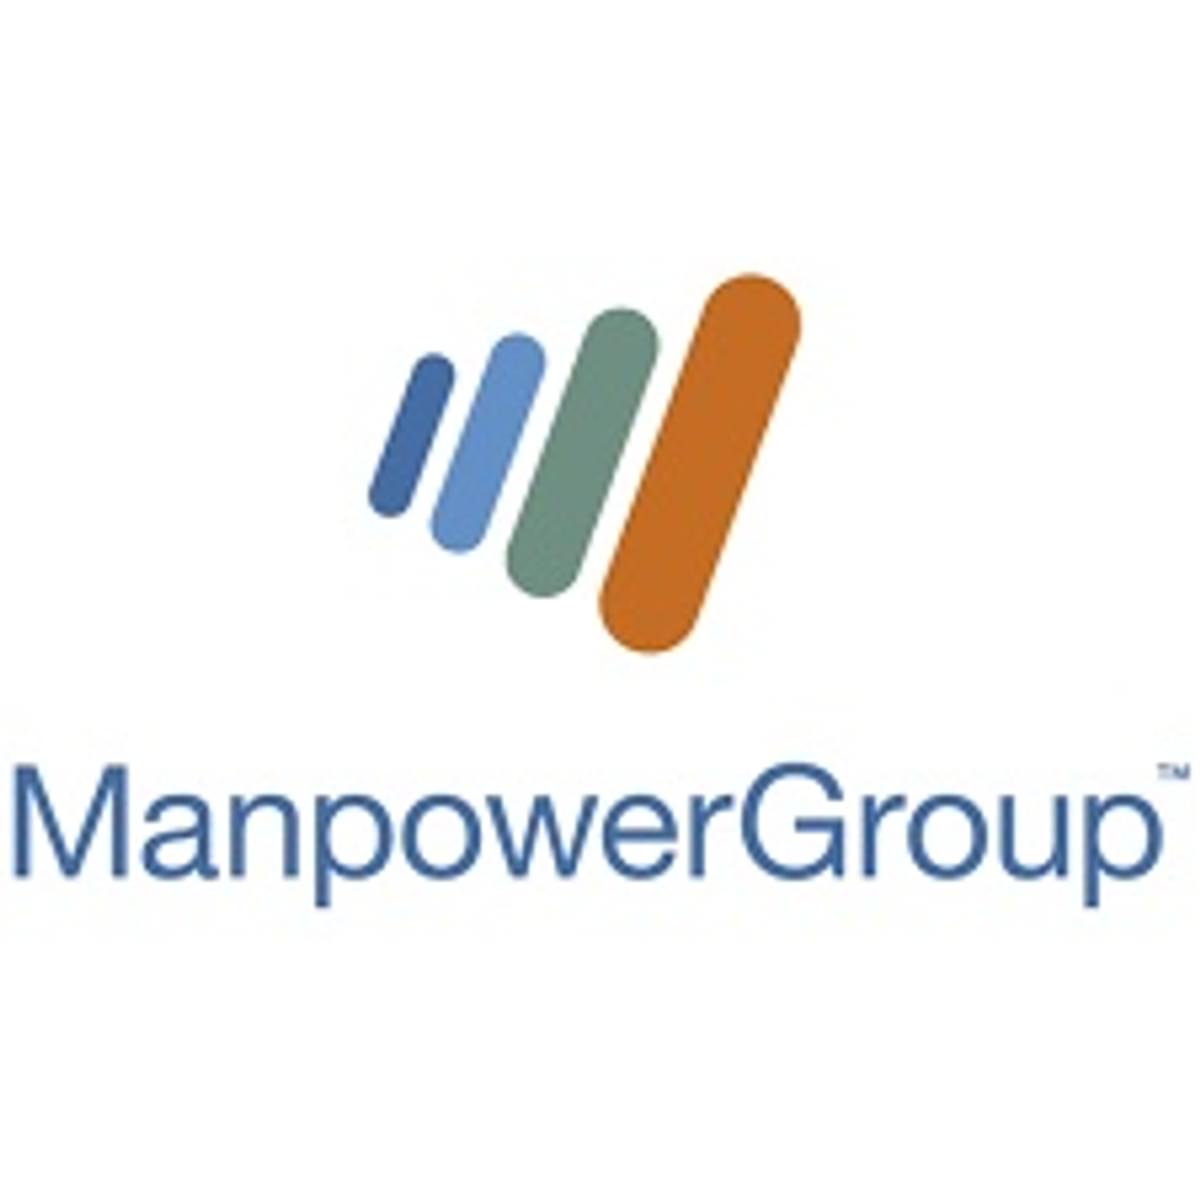 ManpowerGroup volledig eigenaar van PEAK-IT en iSense image